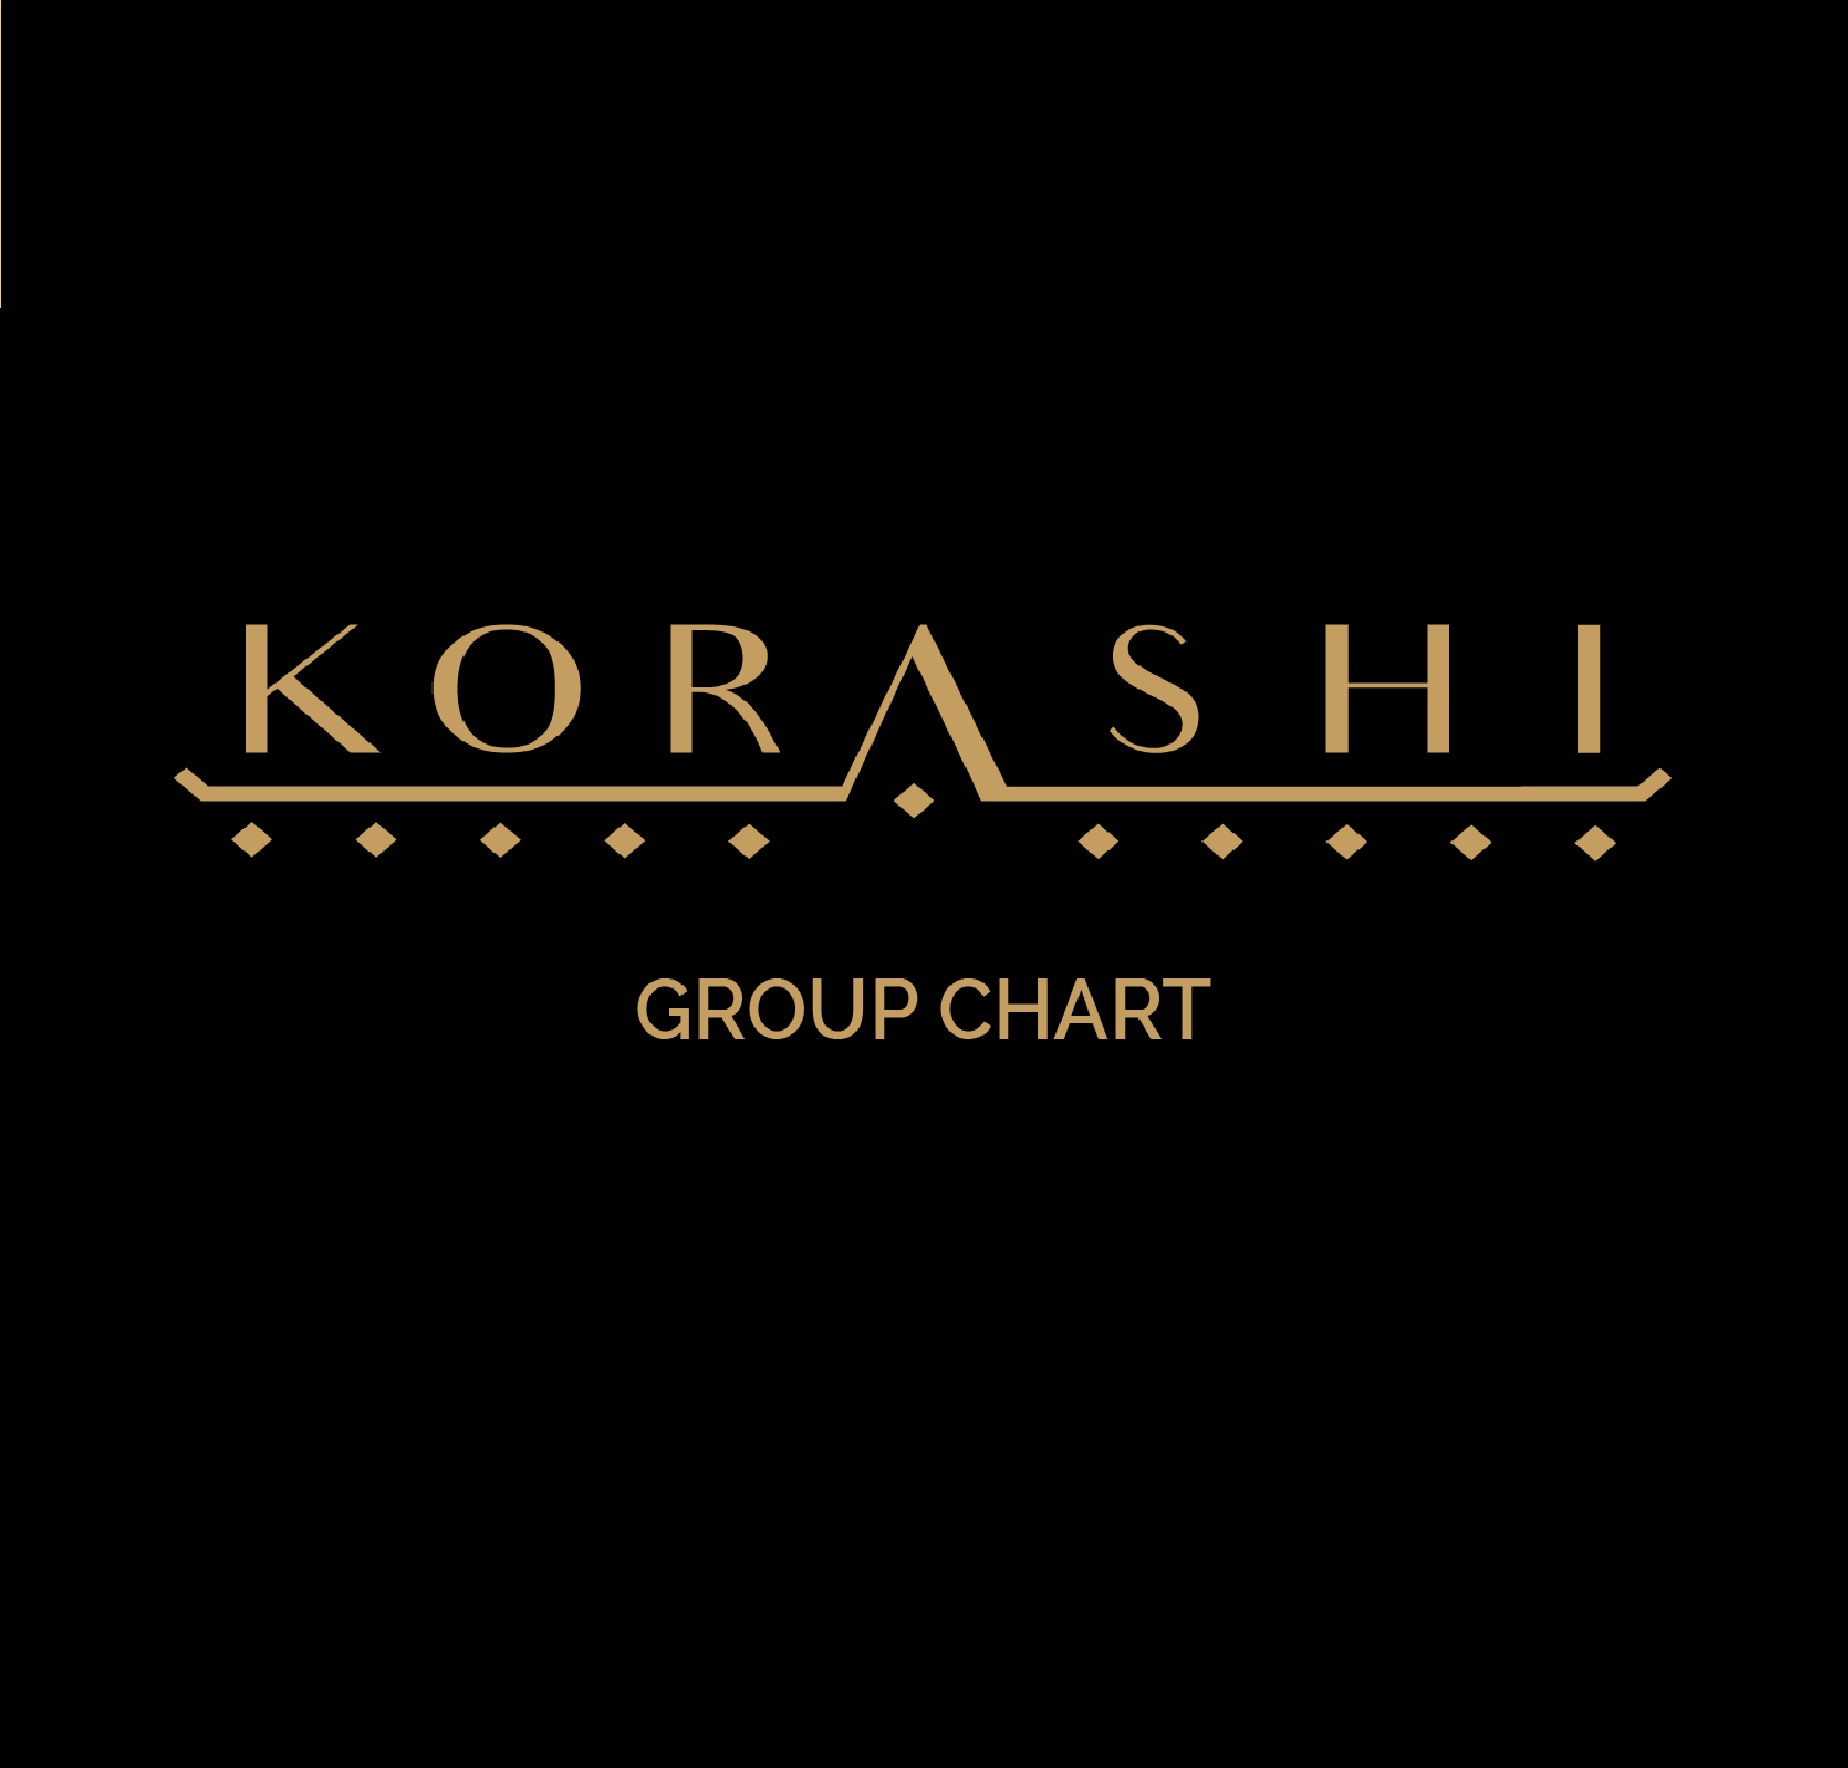 Korashi group